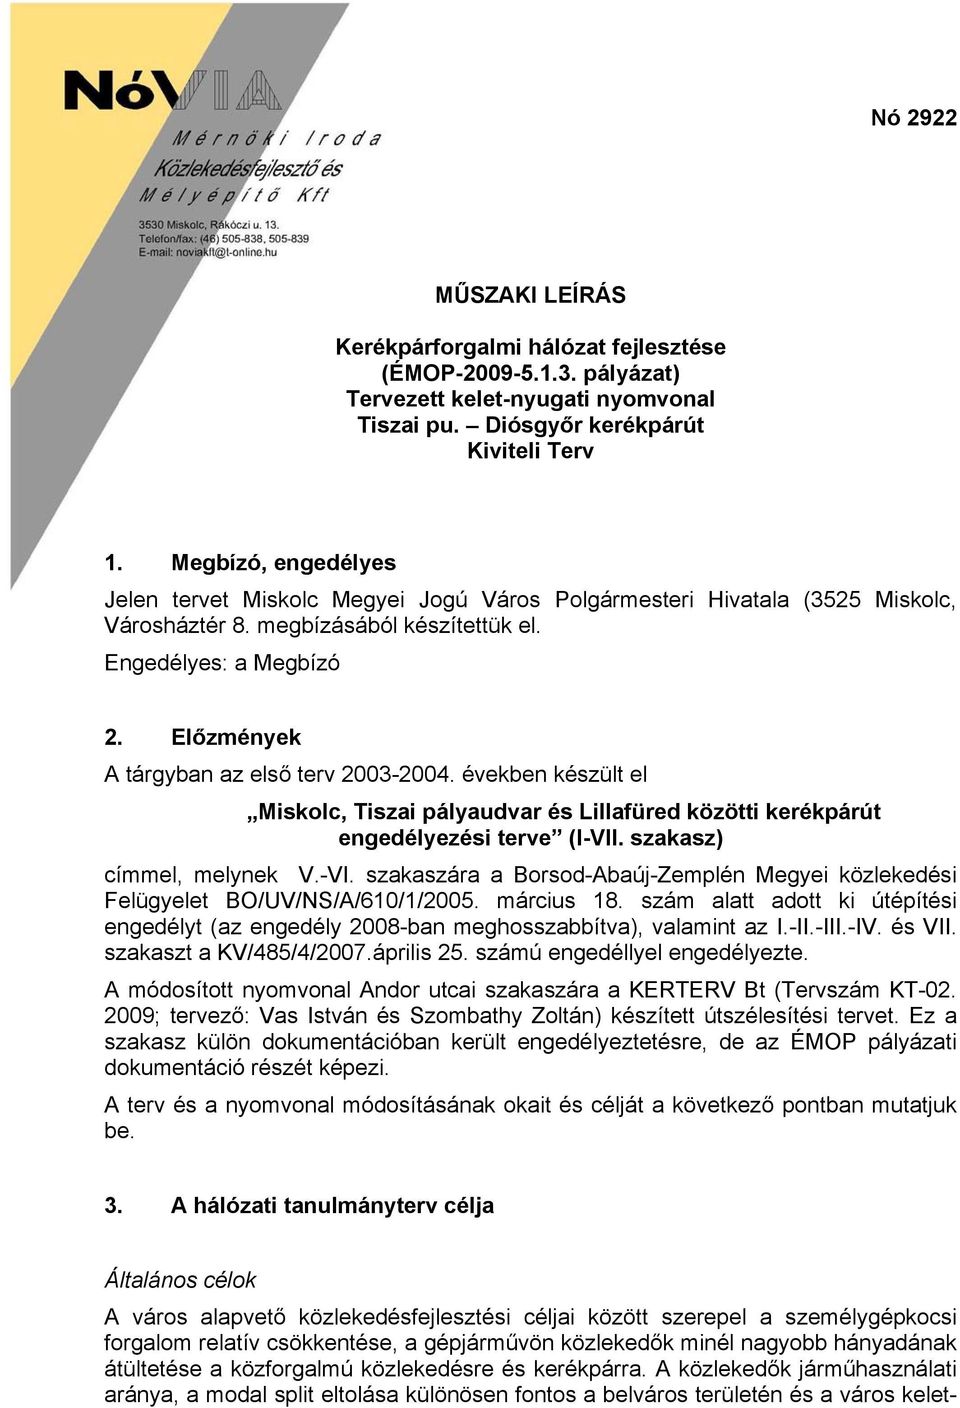 Előzmények A tárgyban az első terv 2003-2004. években készült el Miskolc, Tiszai pályaudvar és Lillafüred közötti kerékpárút engedélyezési terve (I-VII